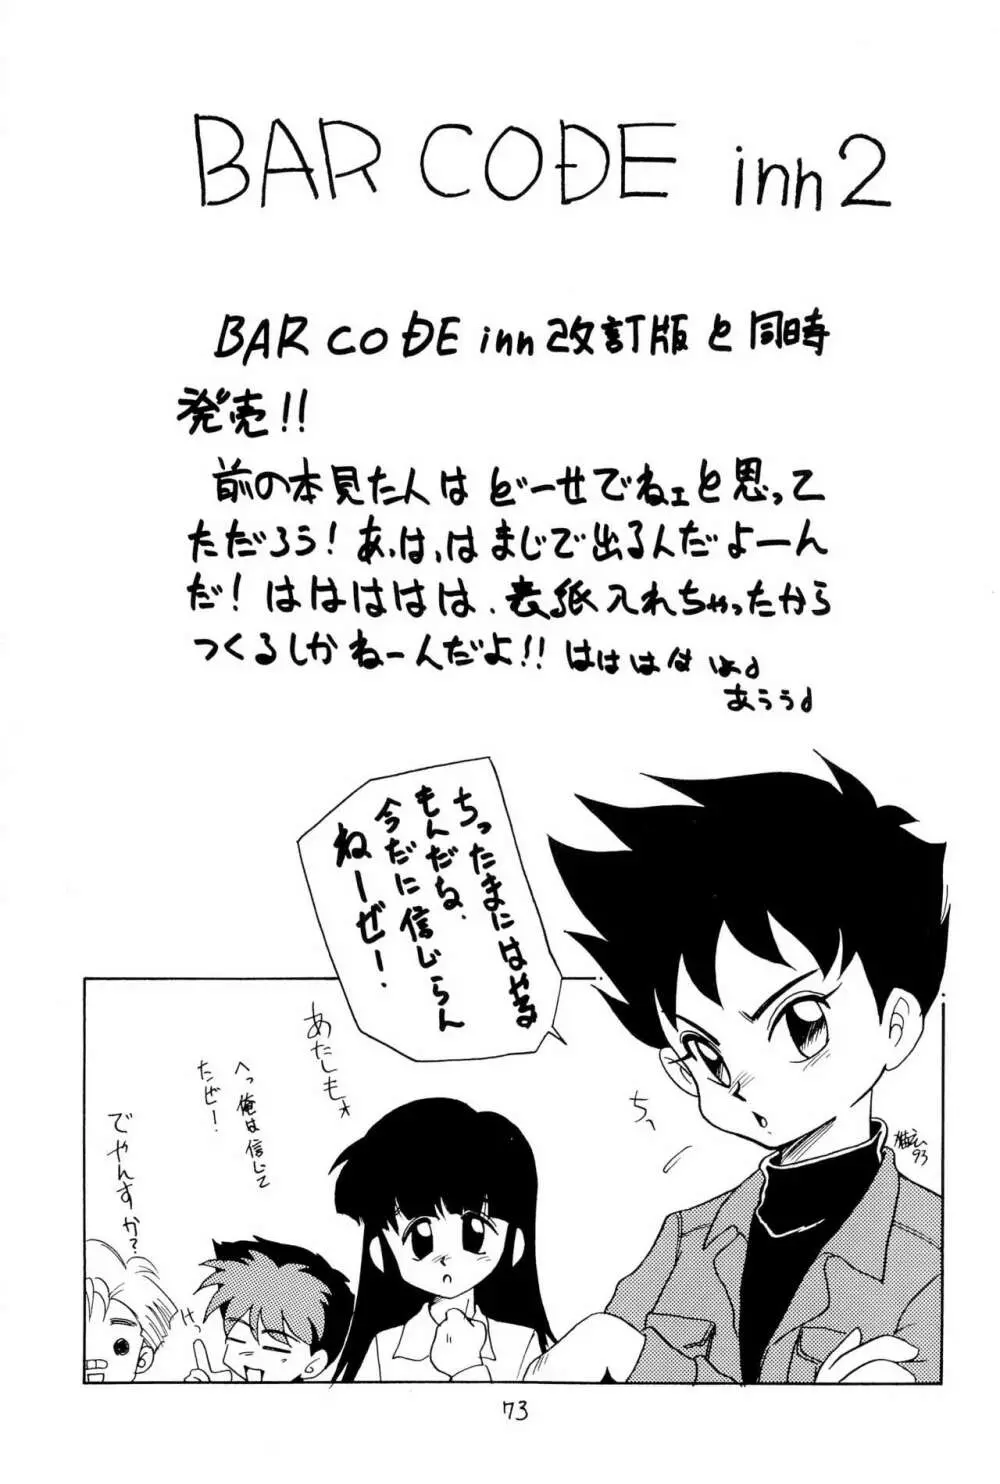 BAR CODE inn 改訂版 - page73